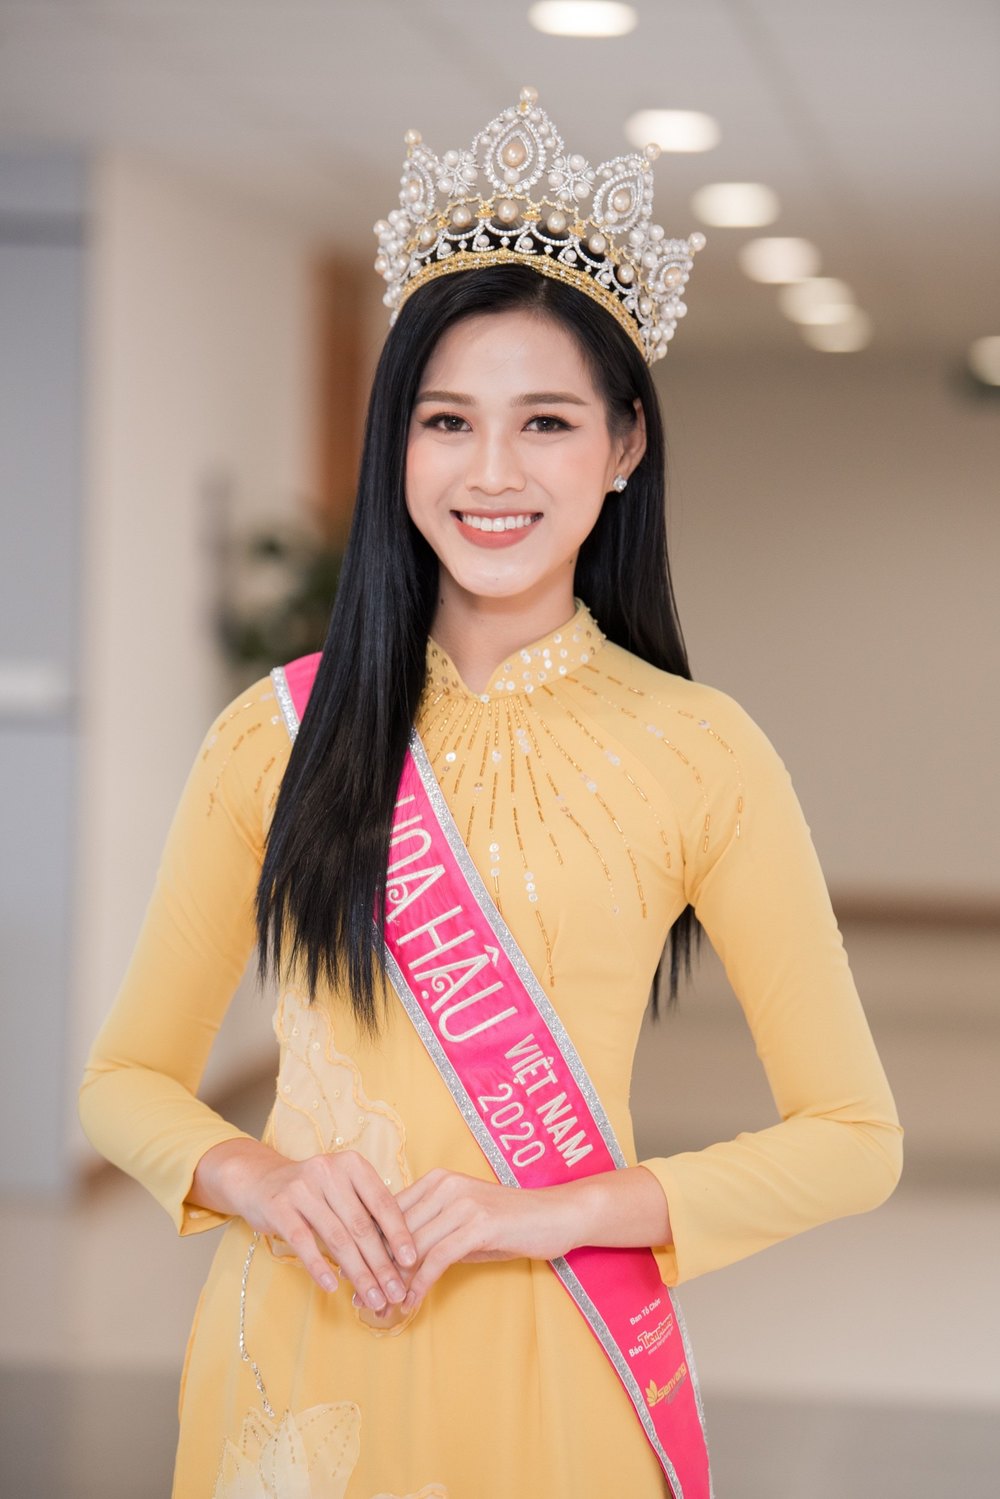  
Đỗ Thị Hà đại diện Việt Nam chinh chiến Miss World 2021. - Tin sao Viet - Tin tuc sao Viet - Scandal sao Viet - Tin tuc cua Sao - Tin cua Sao